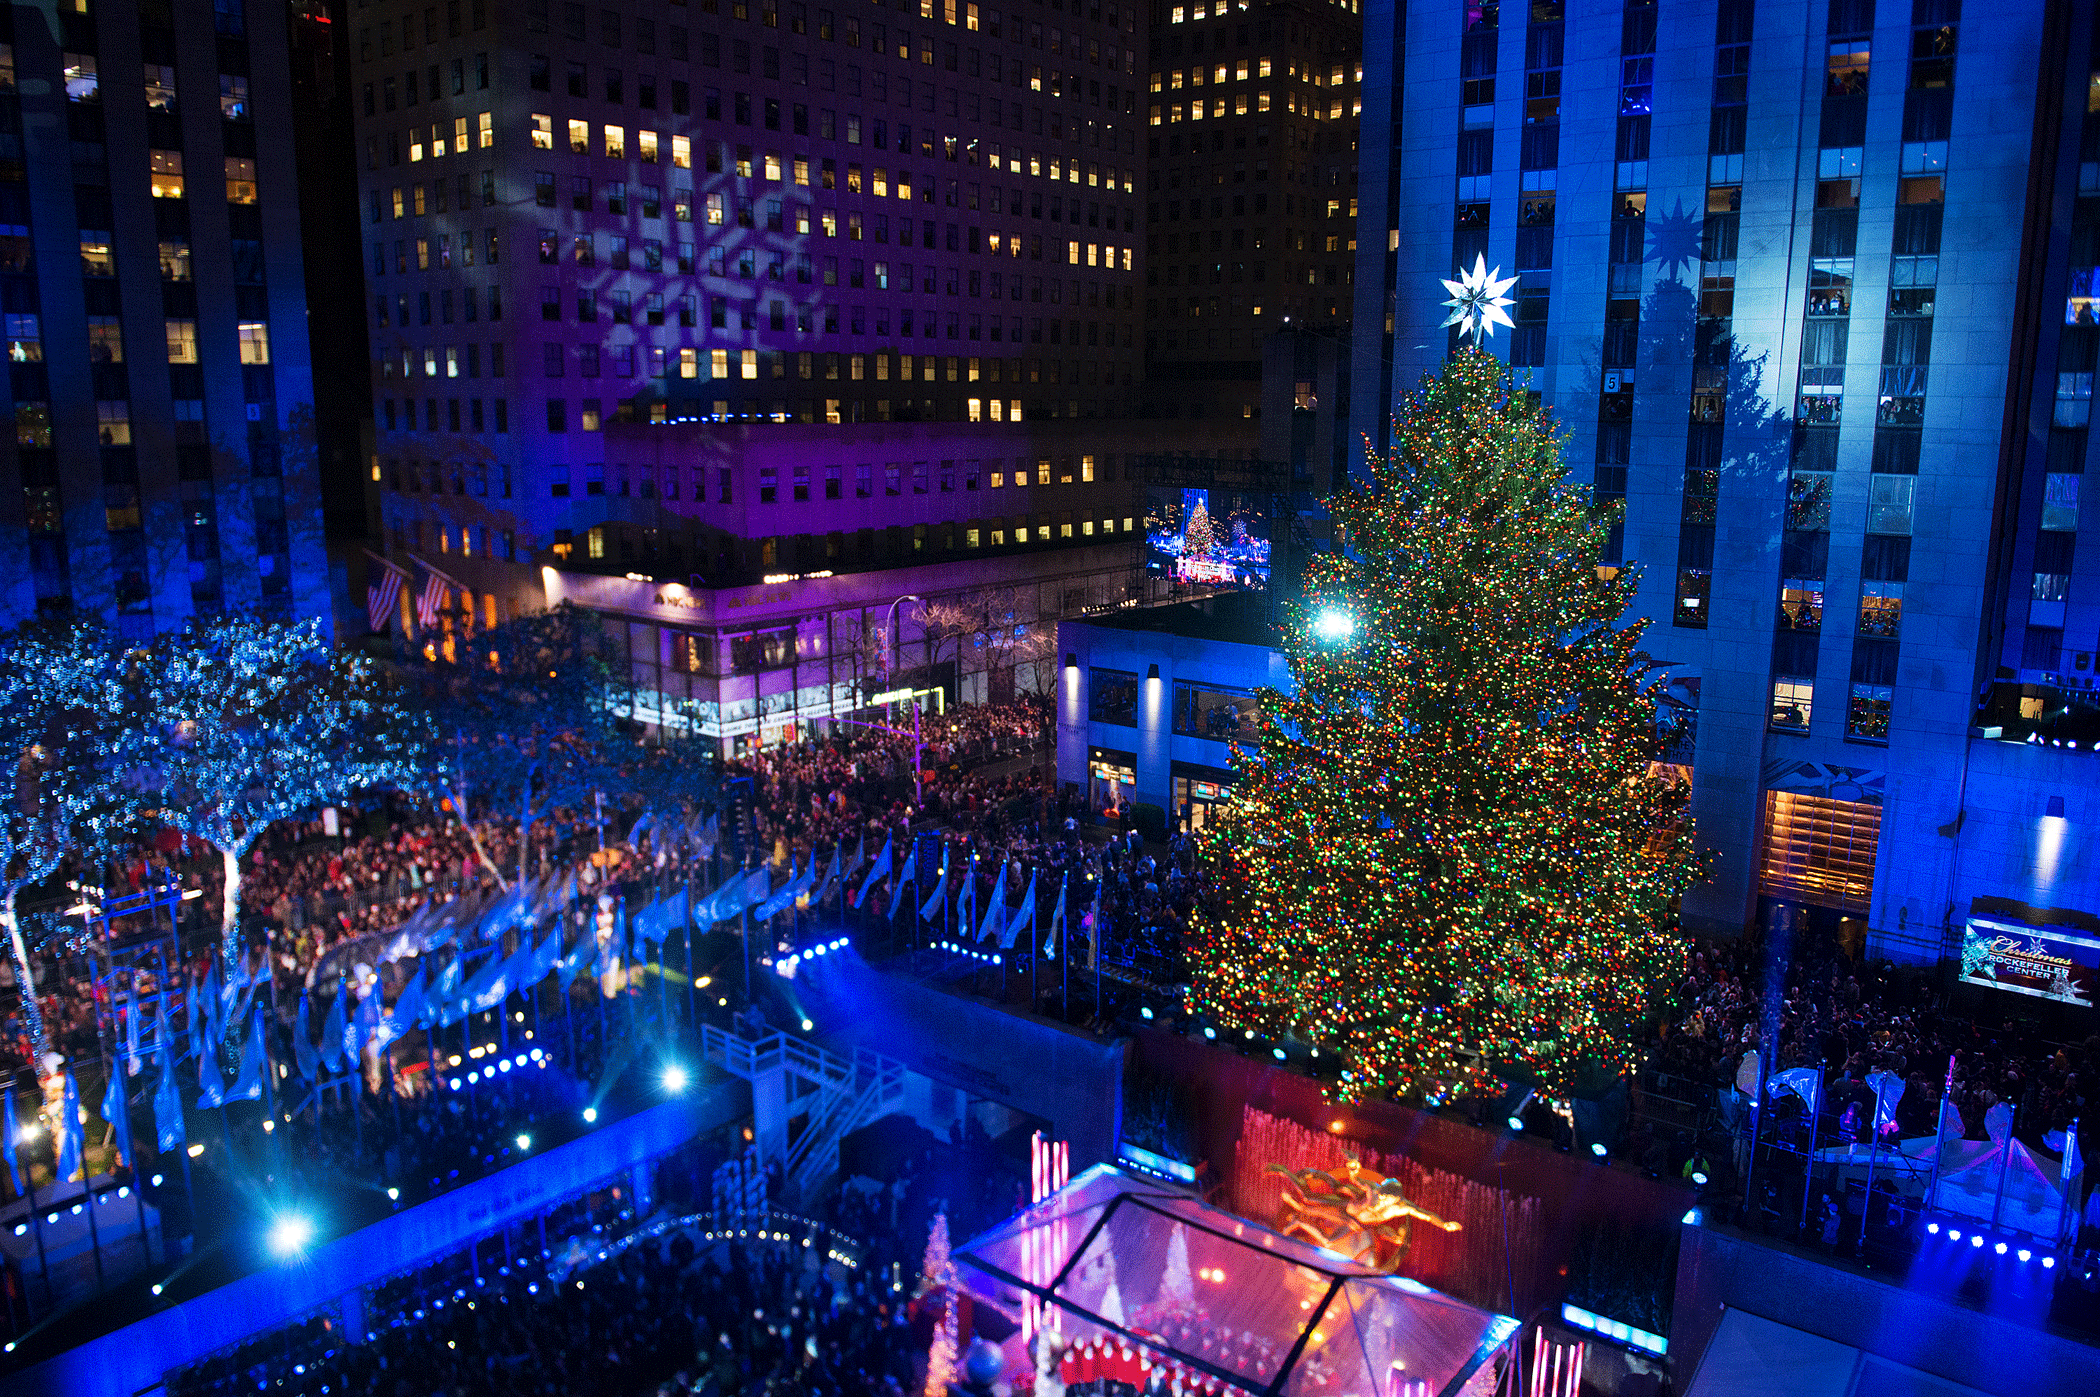 The Rockefeller Center Christmas tree lighting on Dec. 2, 2015 in New York.